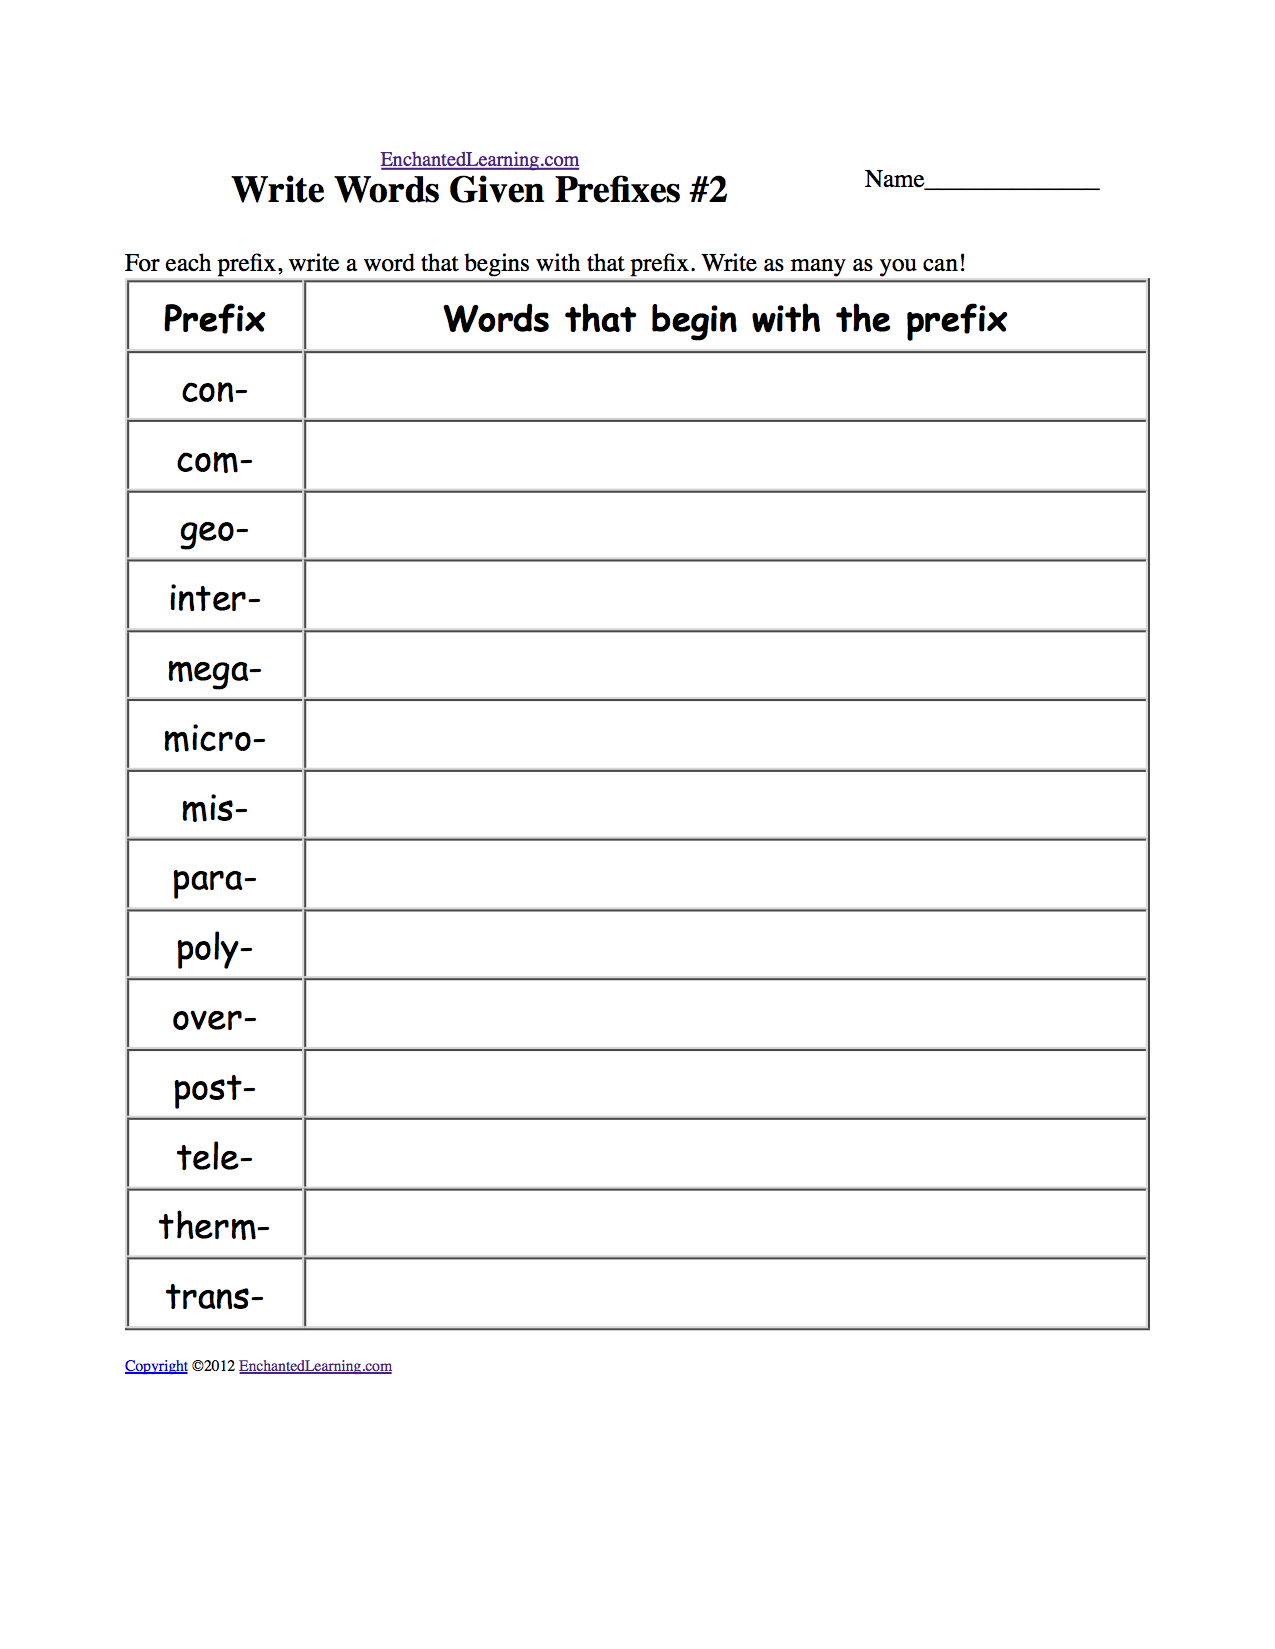 Write Words Given Prefixes #2